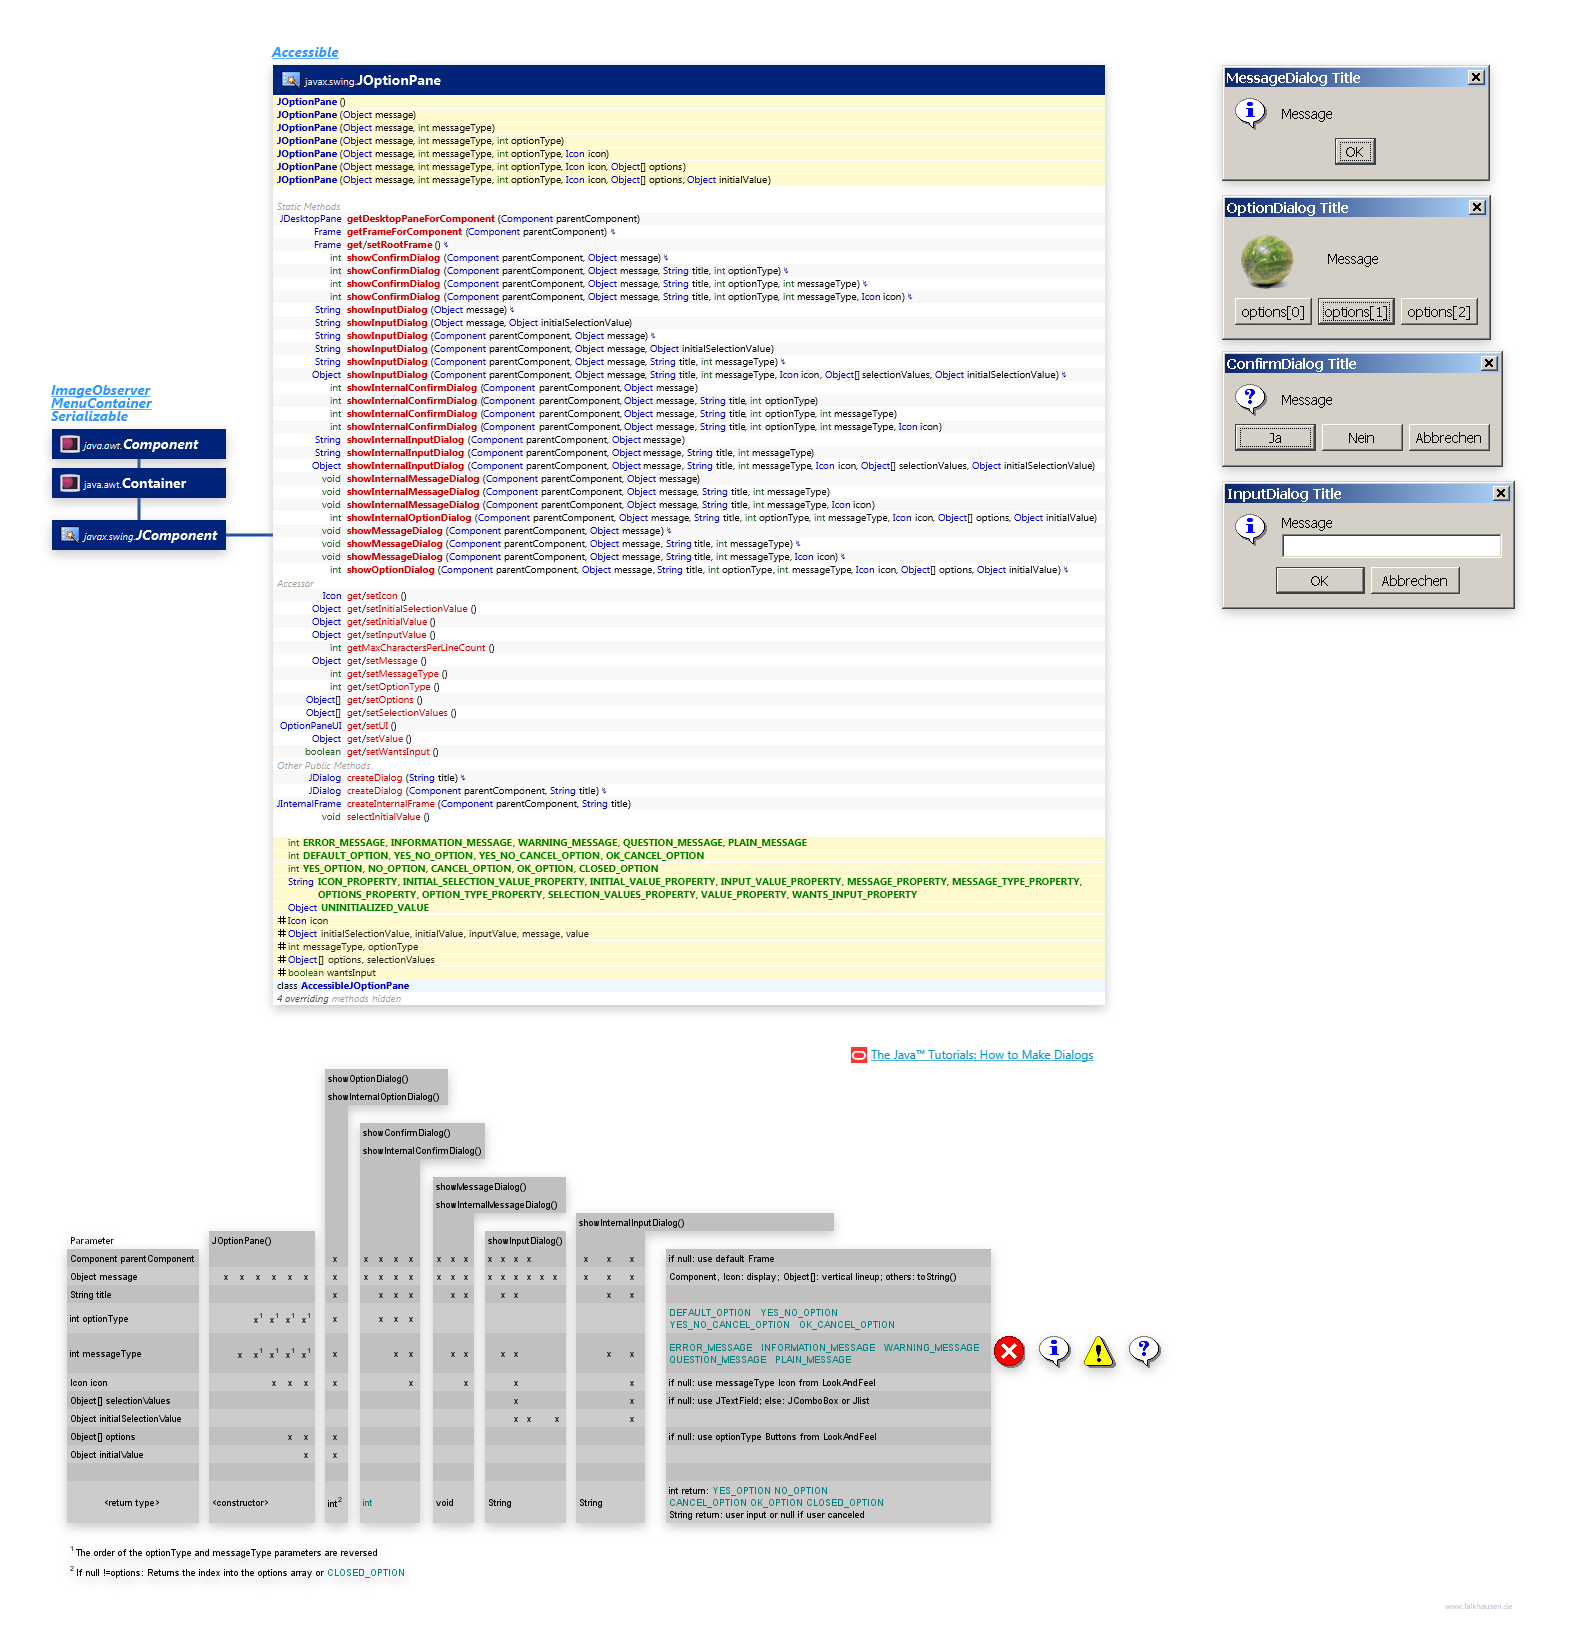 JOptionPane class diagram and api documentation for Java 8